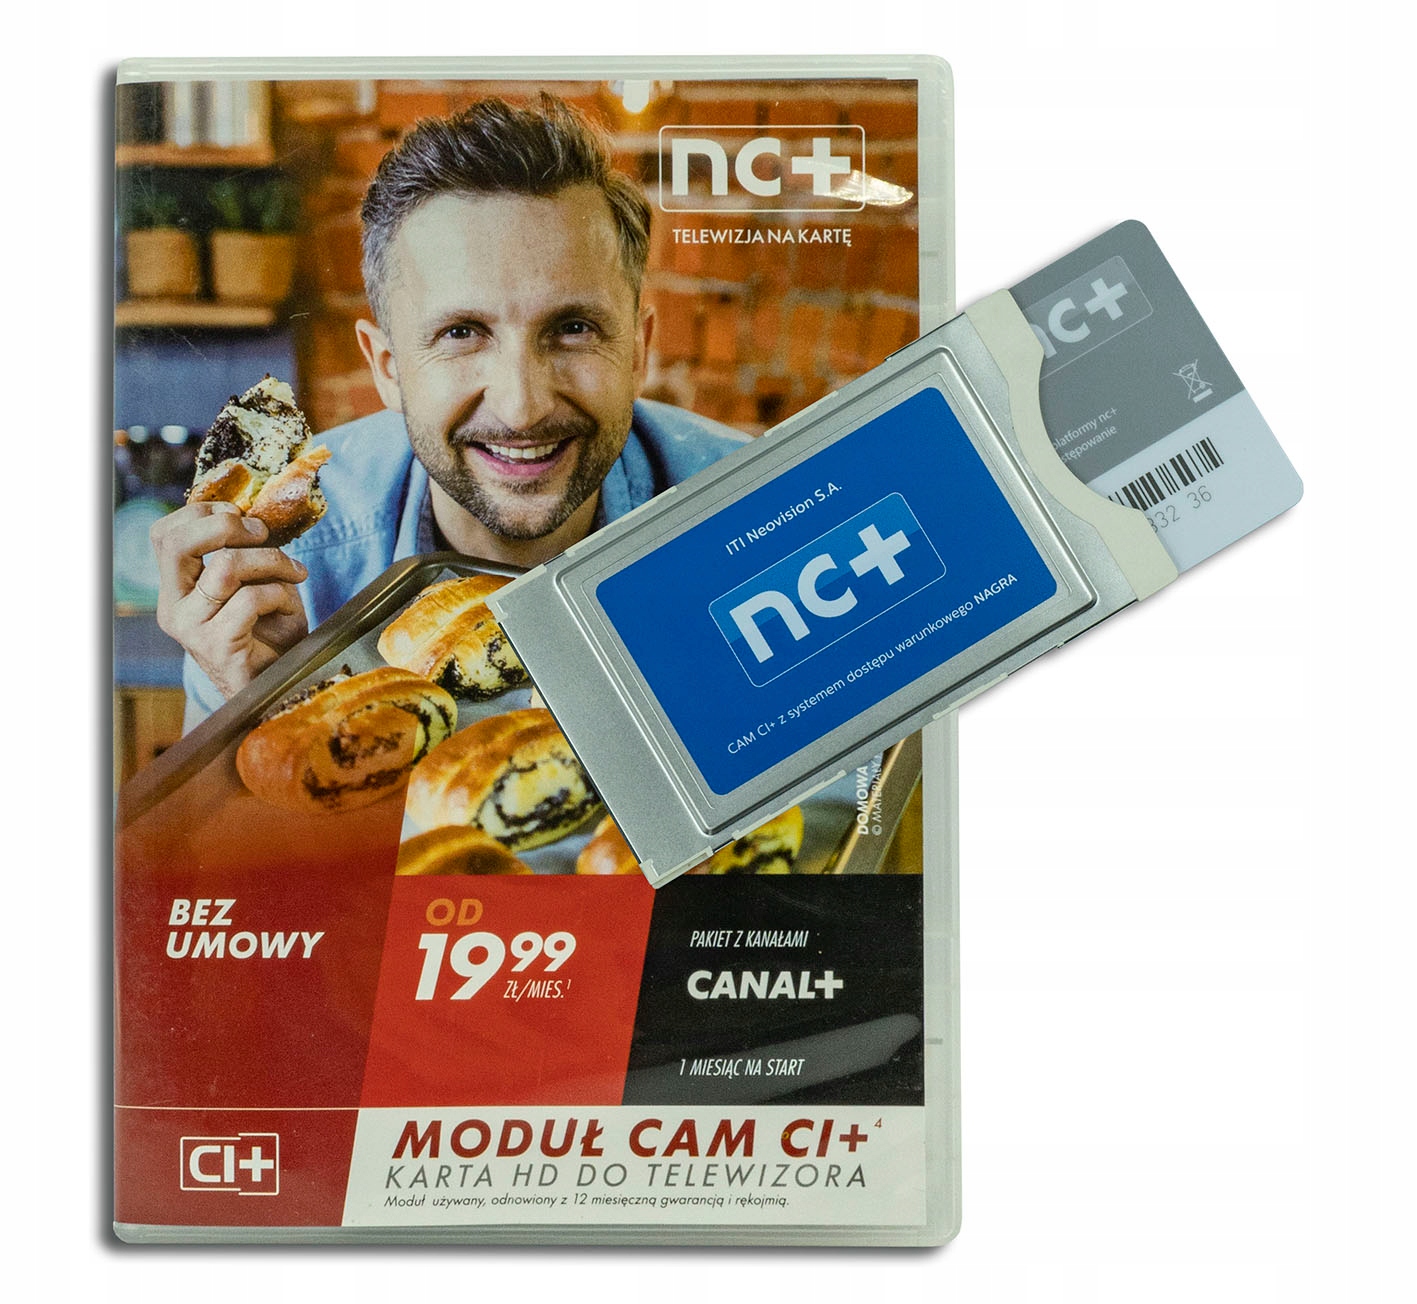 

Moduł Tnk CI+ Cam Nc+ 1 miesiąc Start+ z Canal+